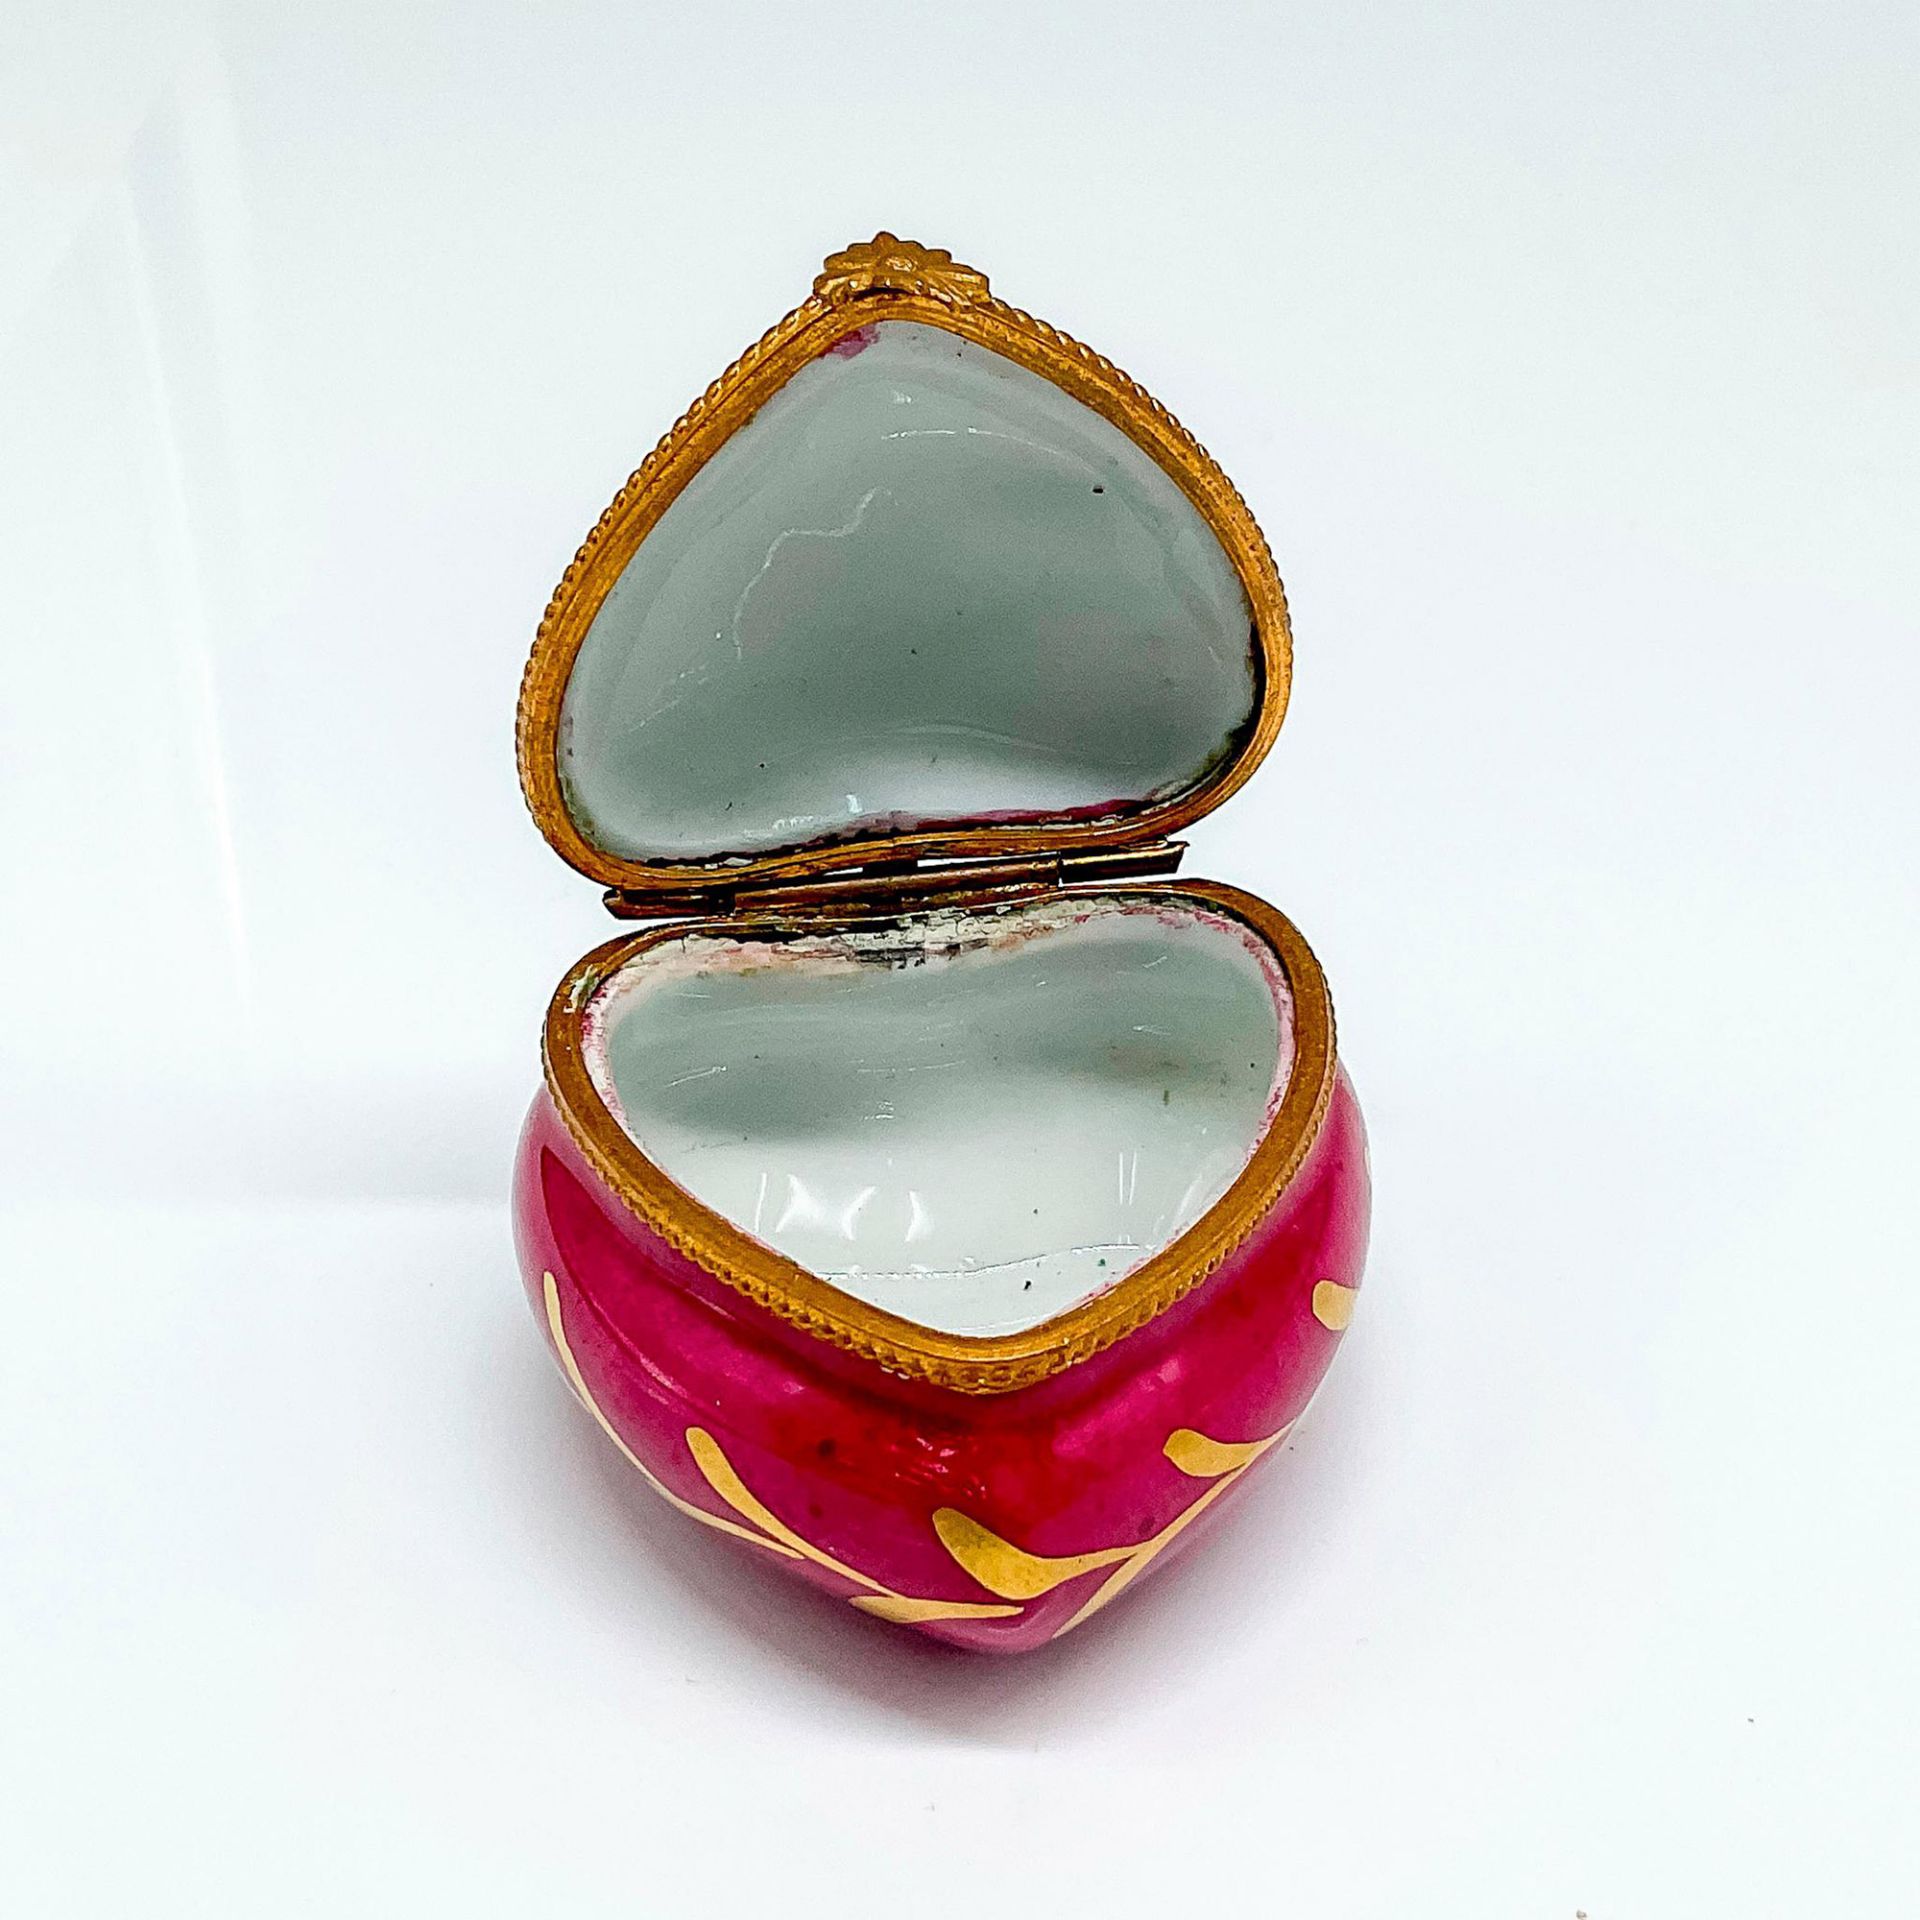 Limoges Porcelain Heart Trinket Box - Image 3 of 4